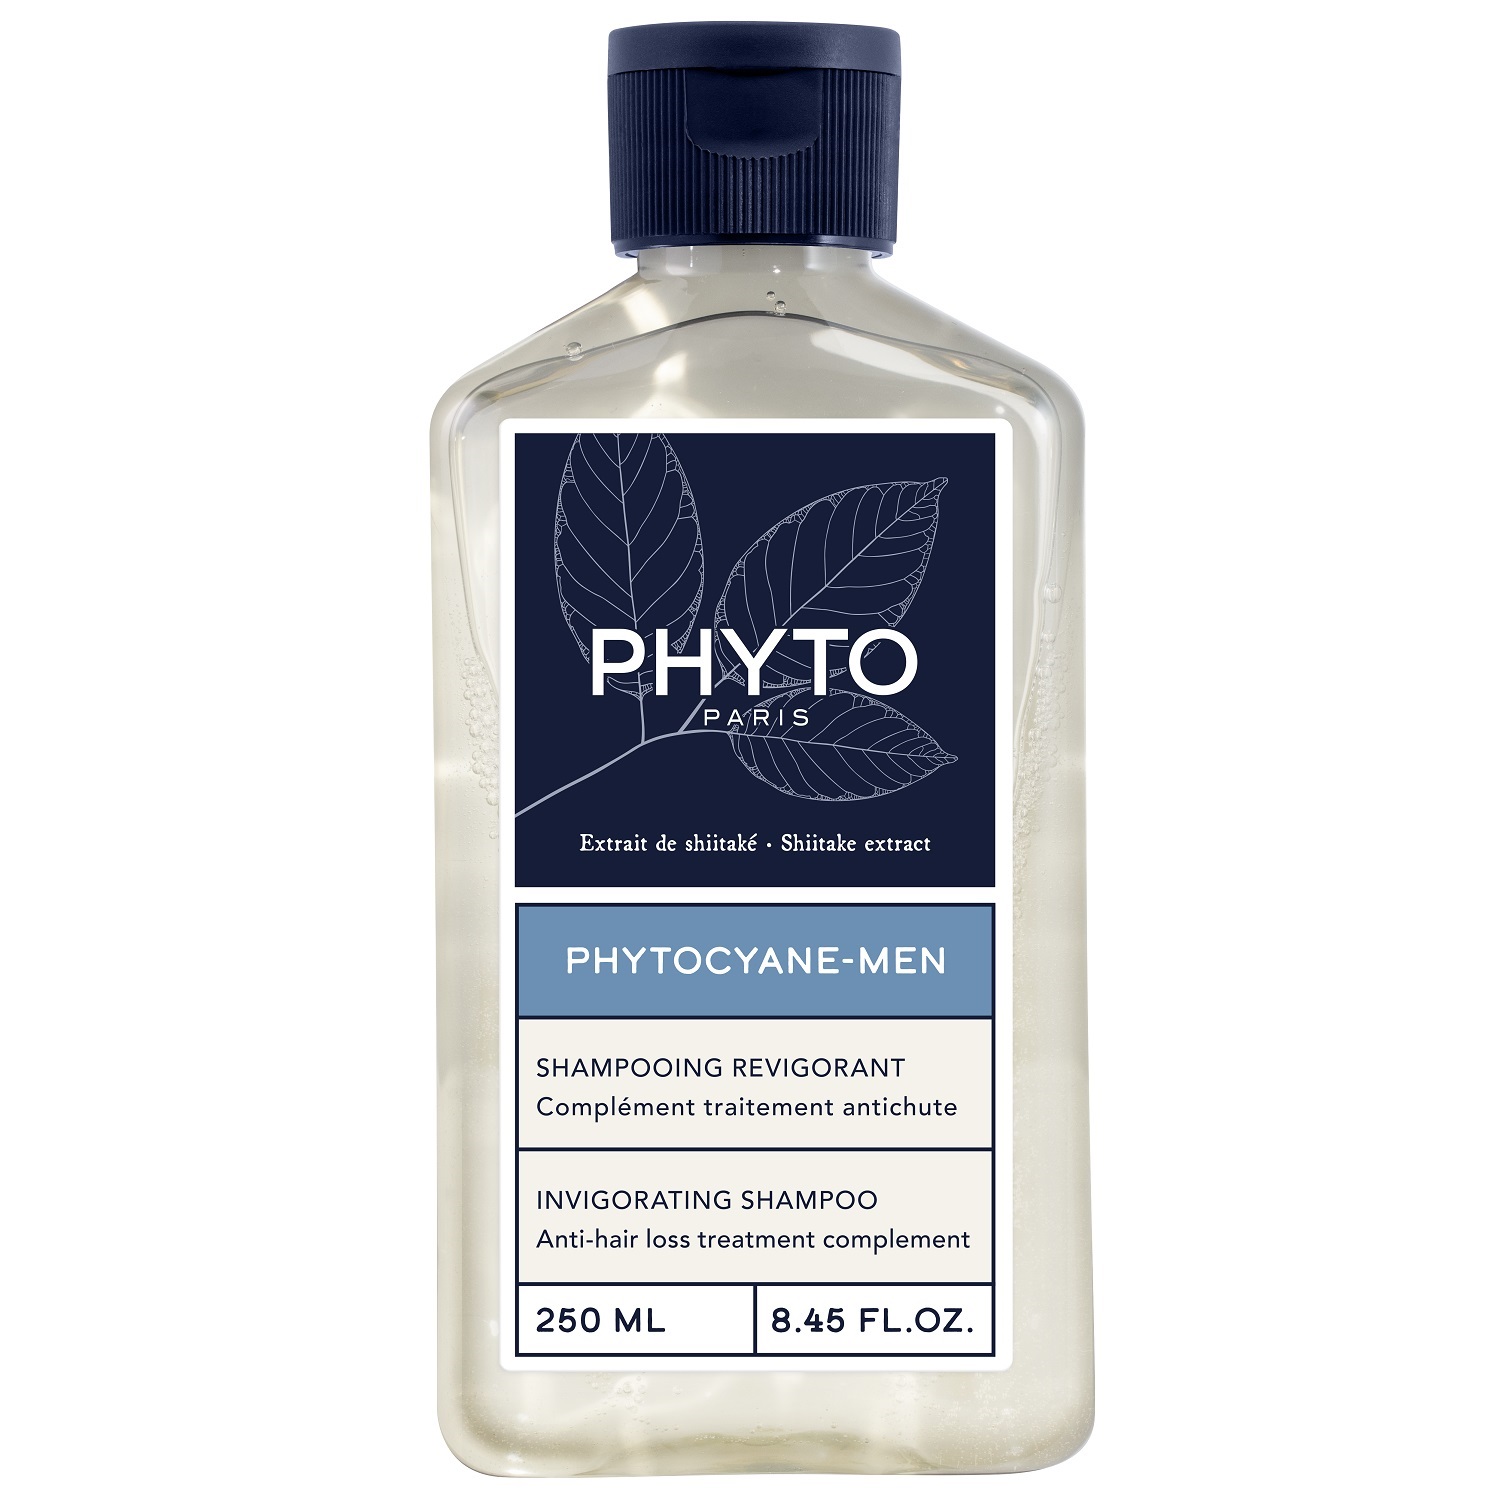 Phyto Мужской укрепляющий шампунь для волос, 250 мл (Phyto, Phytocyane)